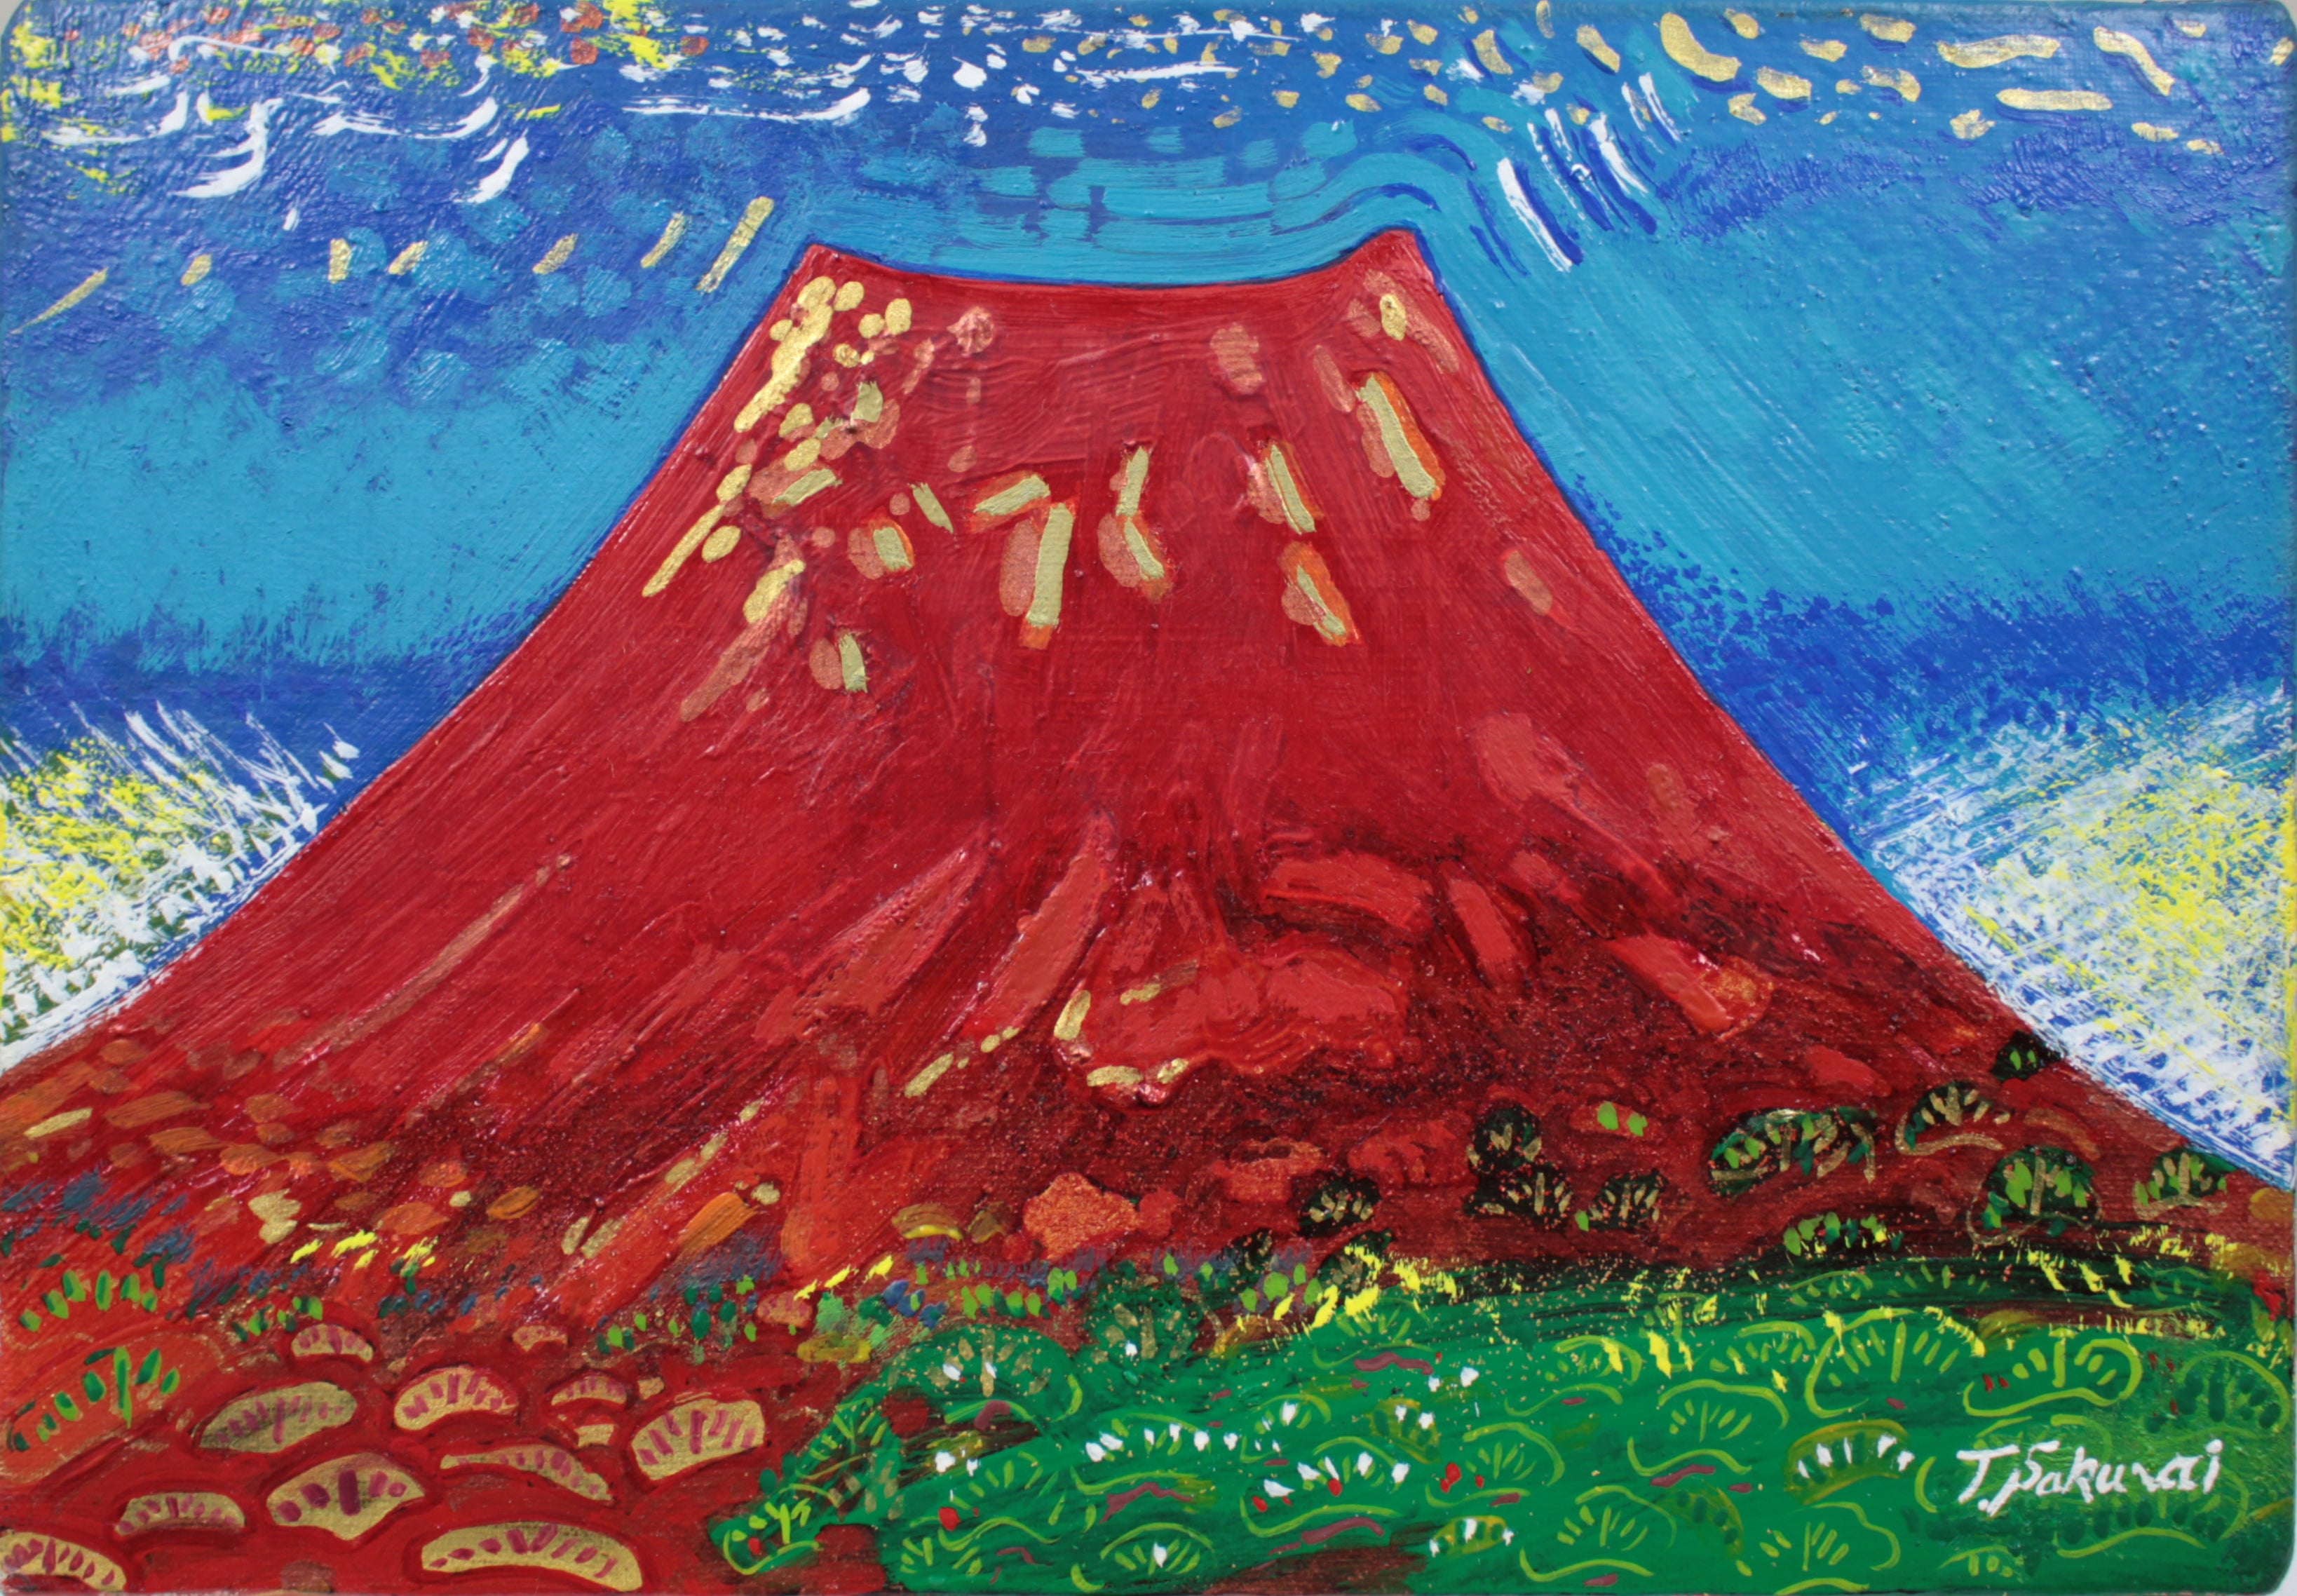 櫻井孝美『真紅富士』 – 北海道画廊